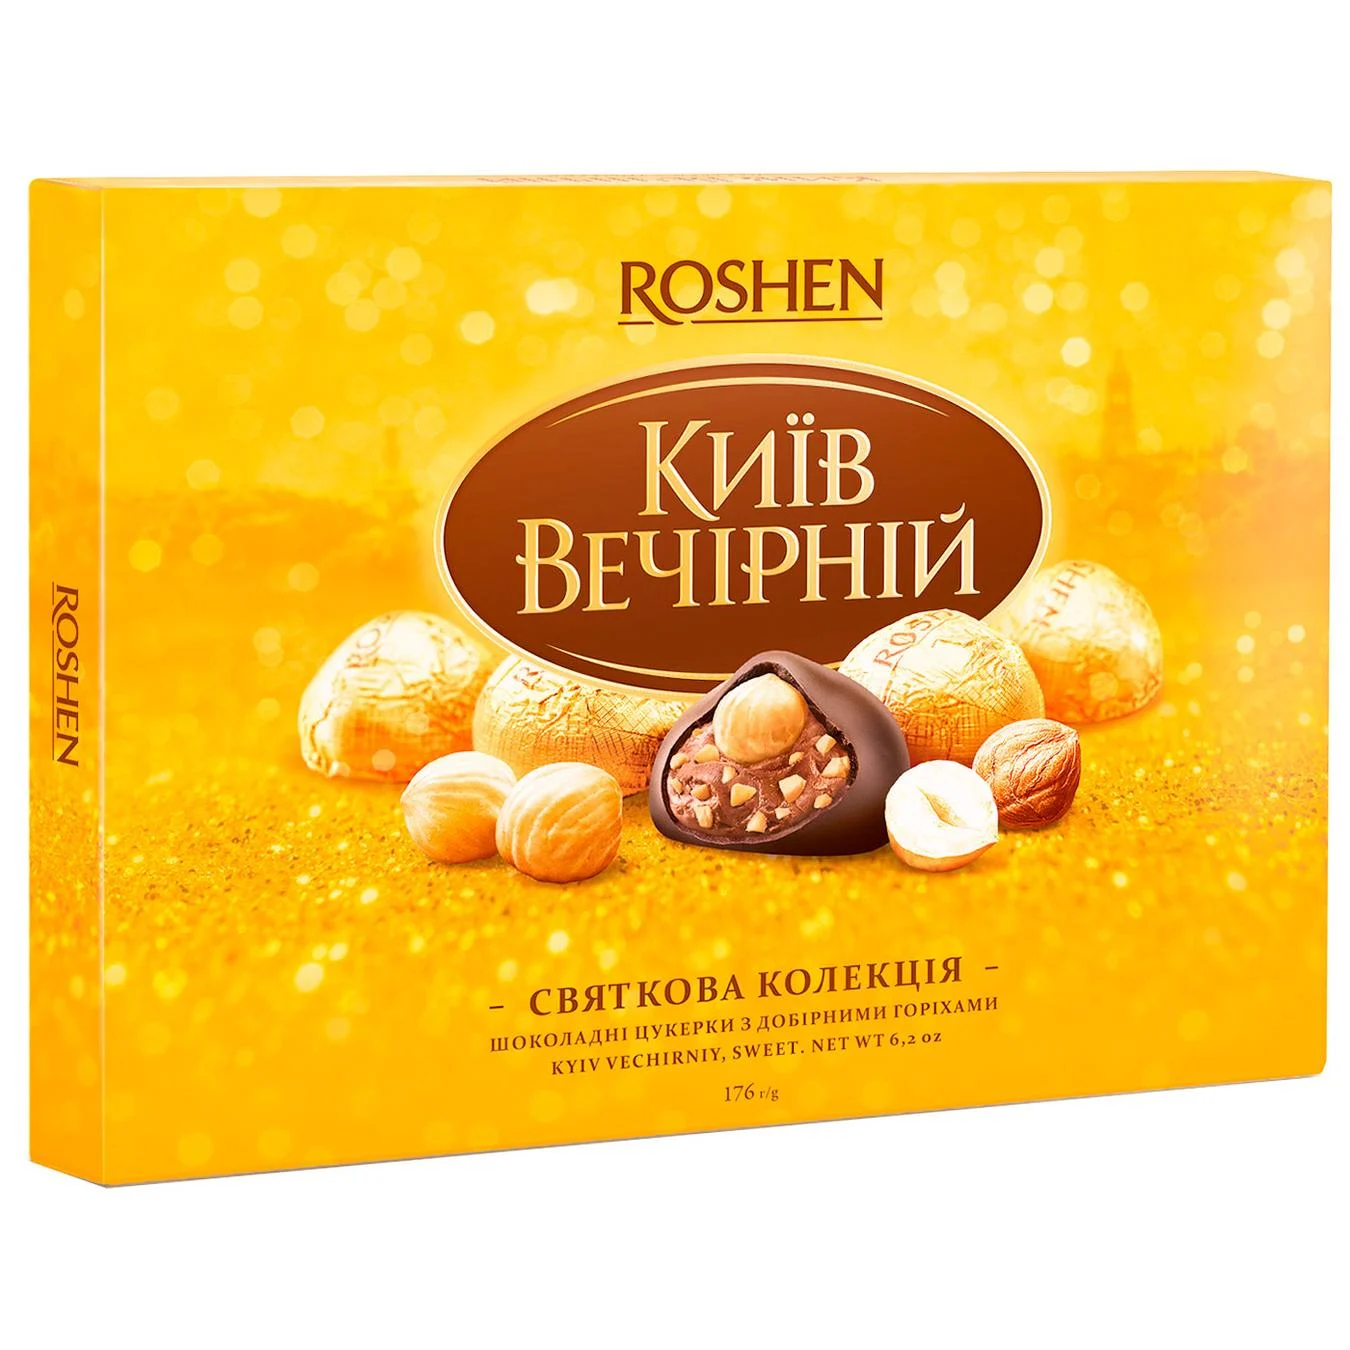 Roshen Kyiv vechirniy chocolate candy 176g